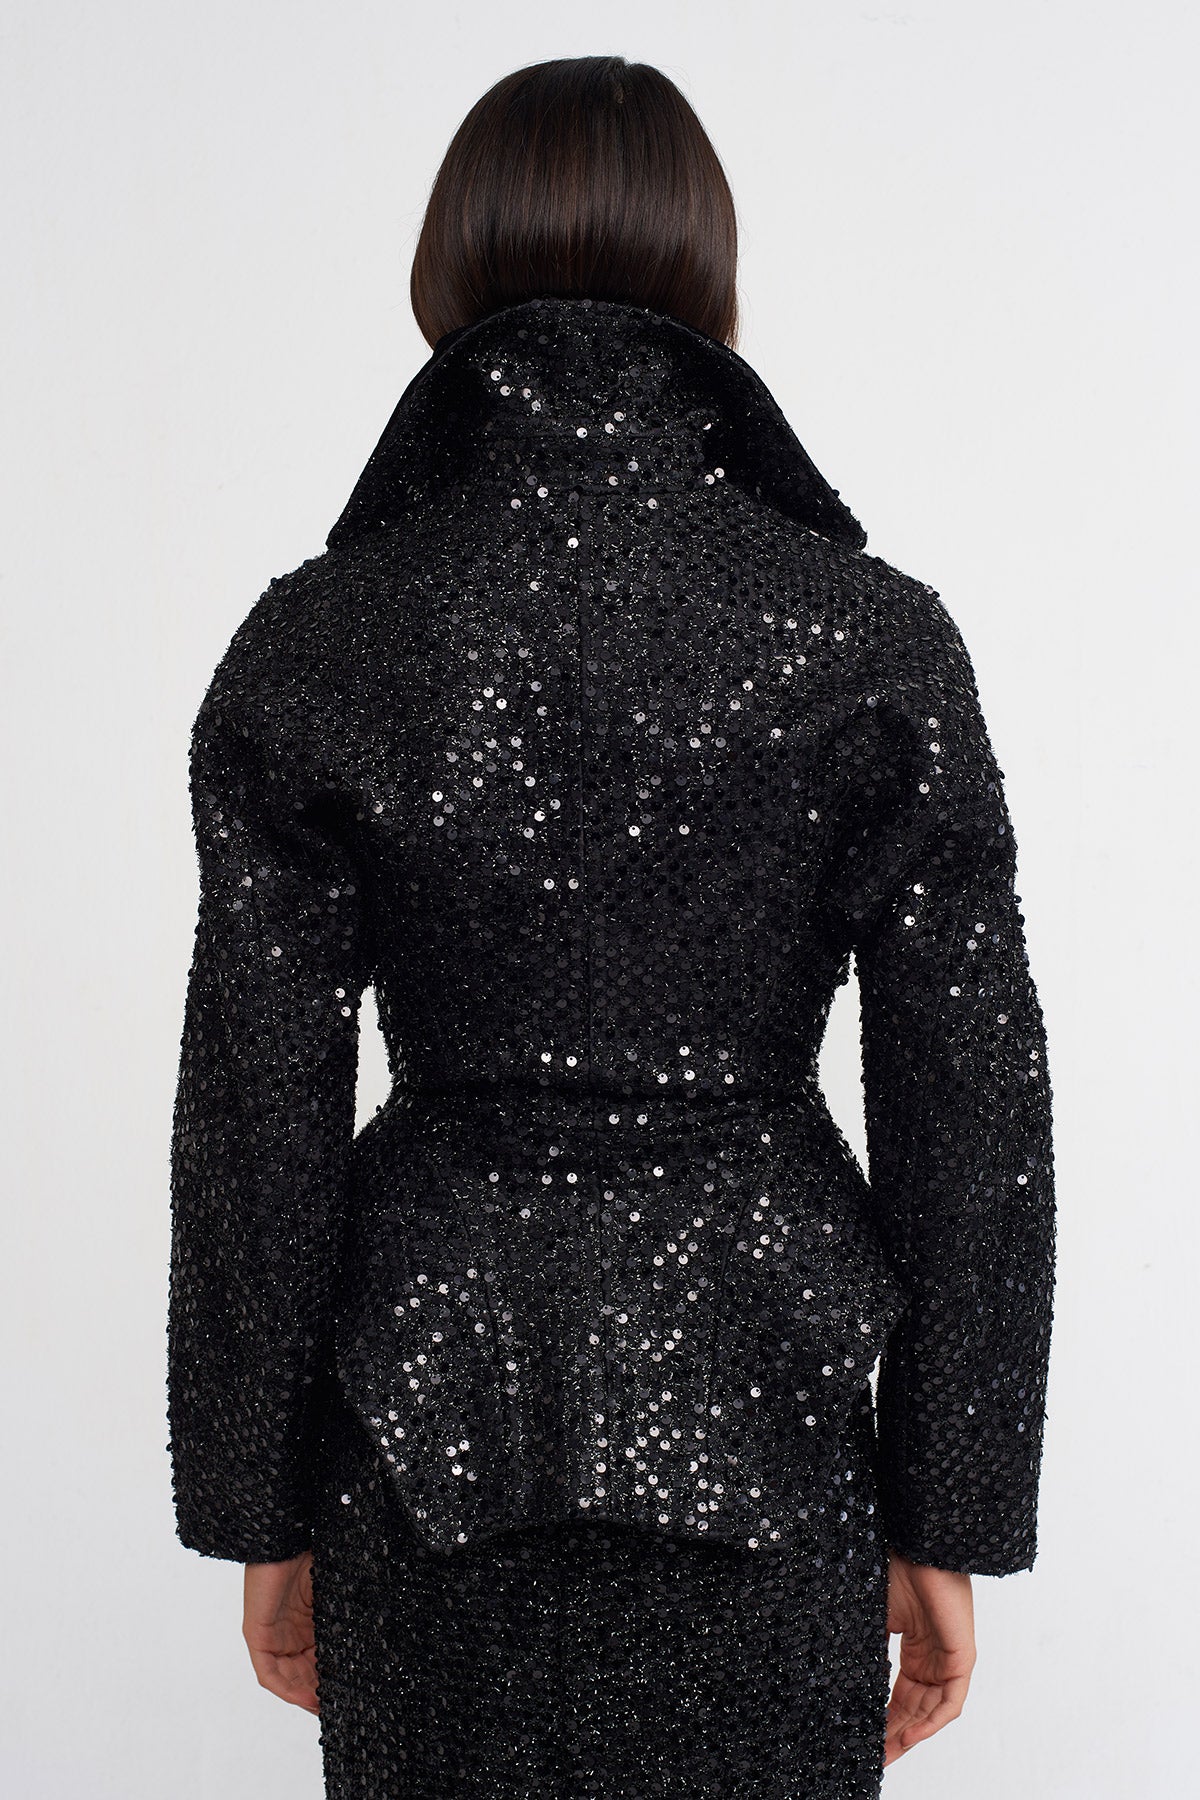 Black Sequin Embellished, Waist-Hugging Chic Jacket-K235015134